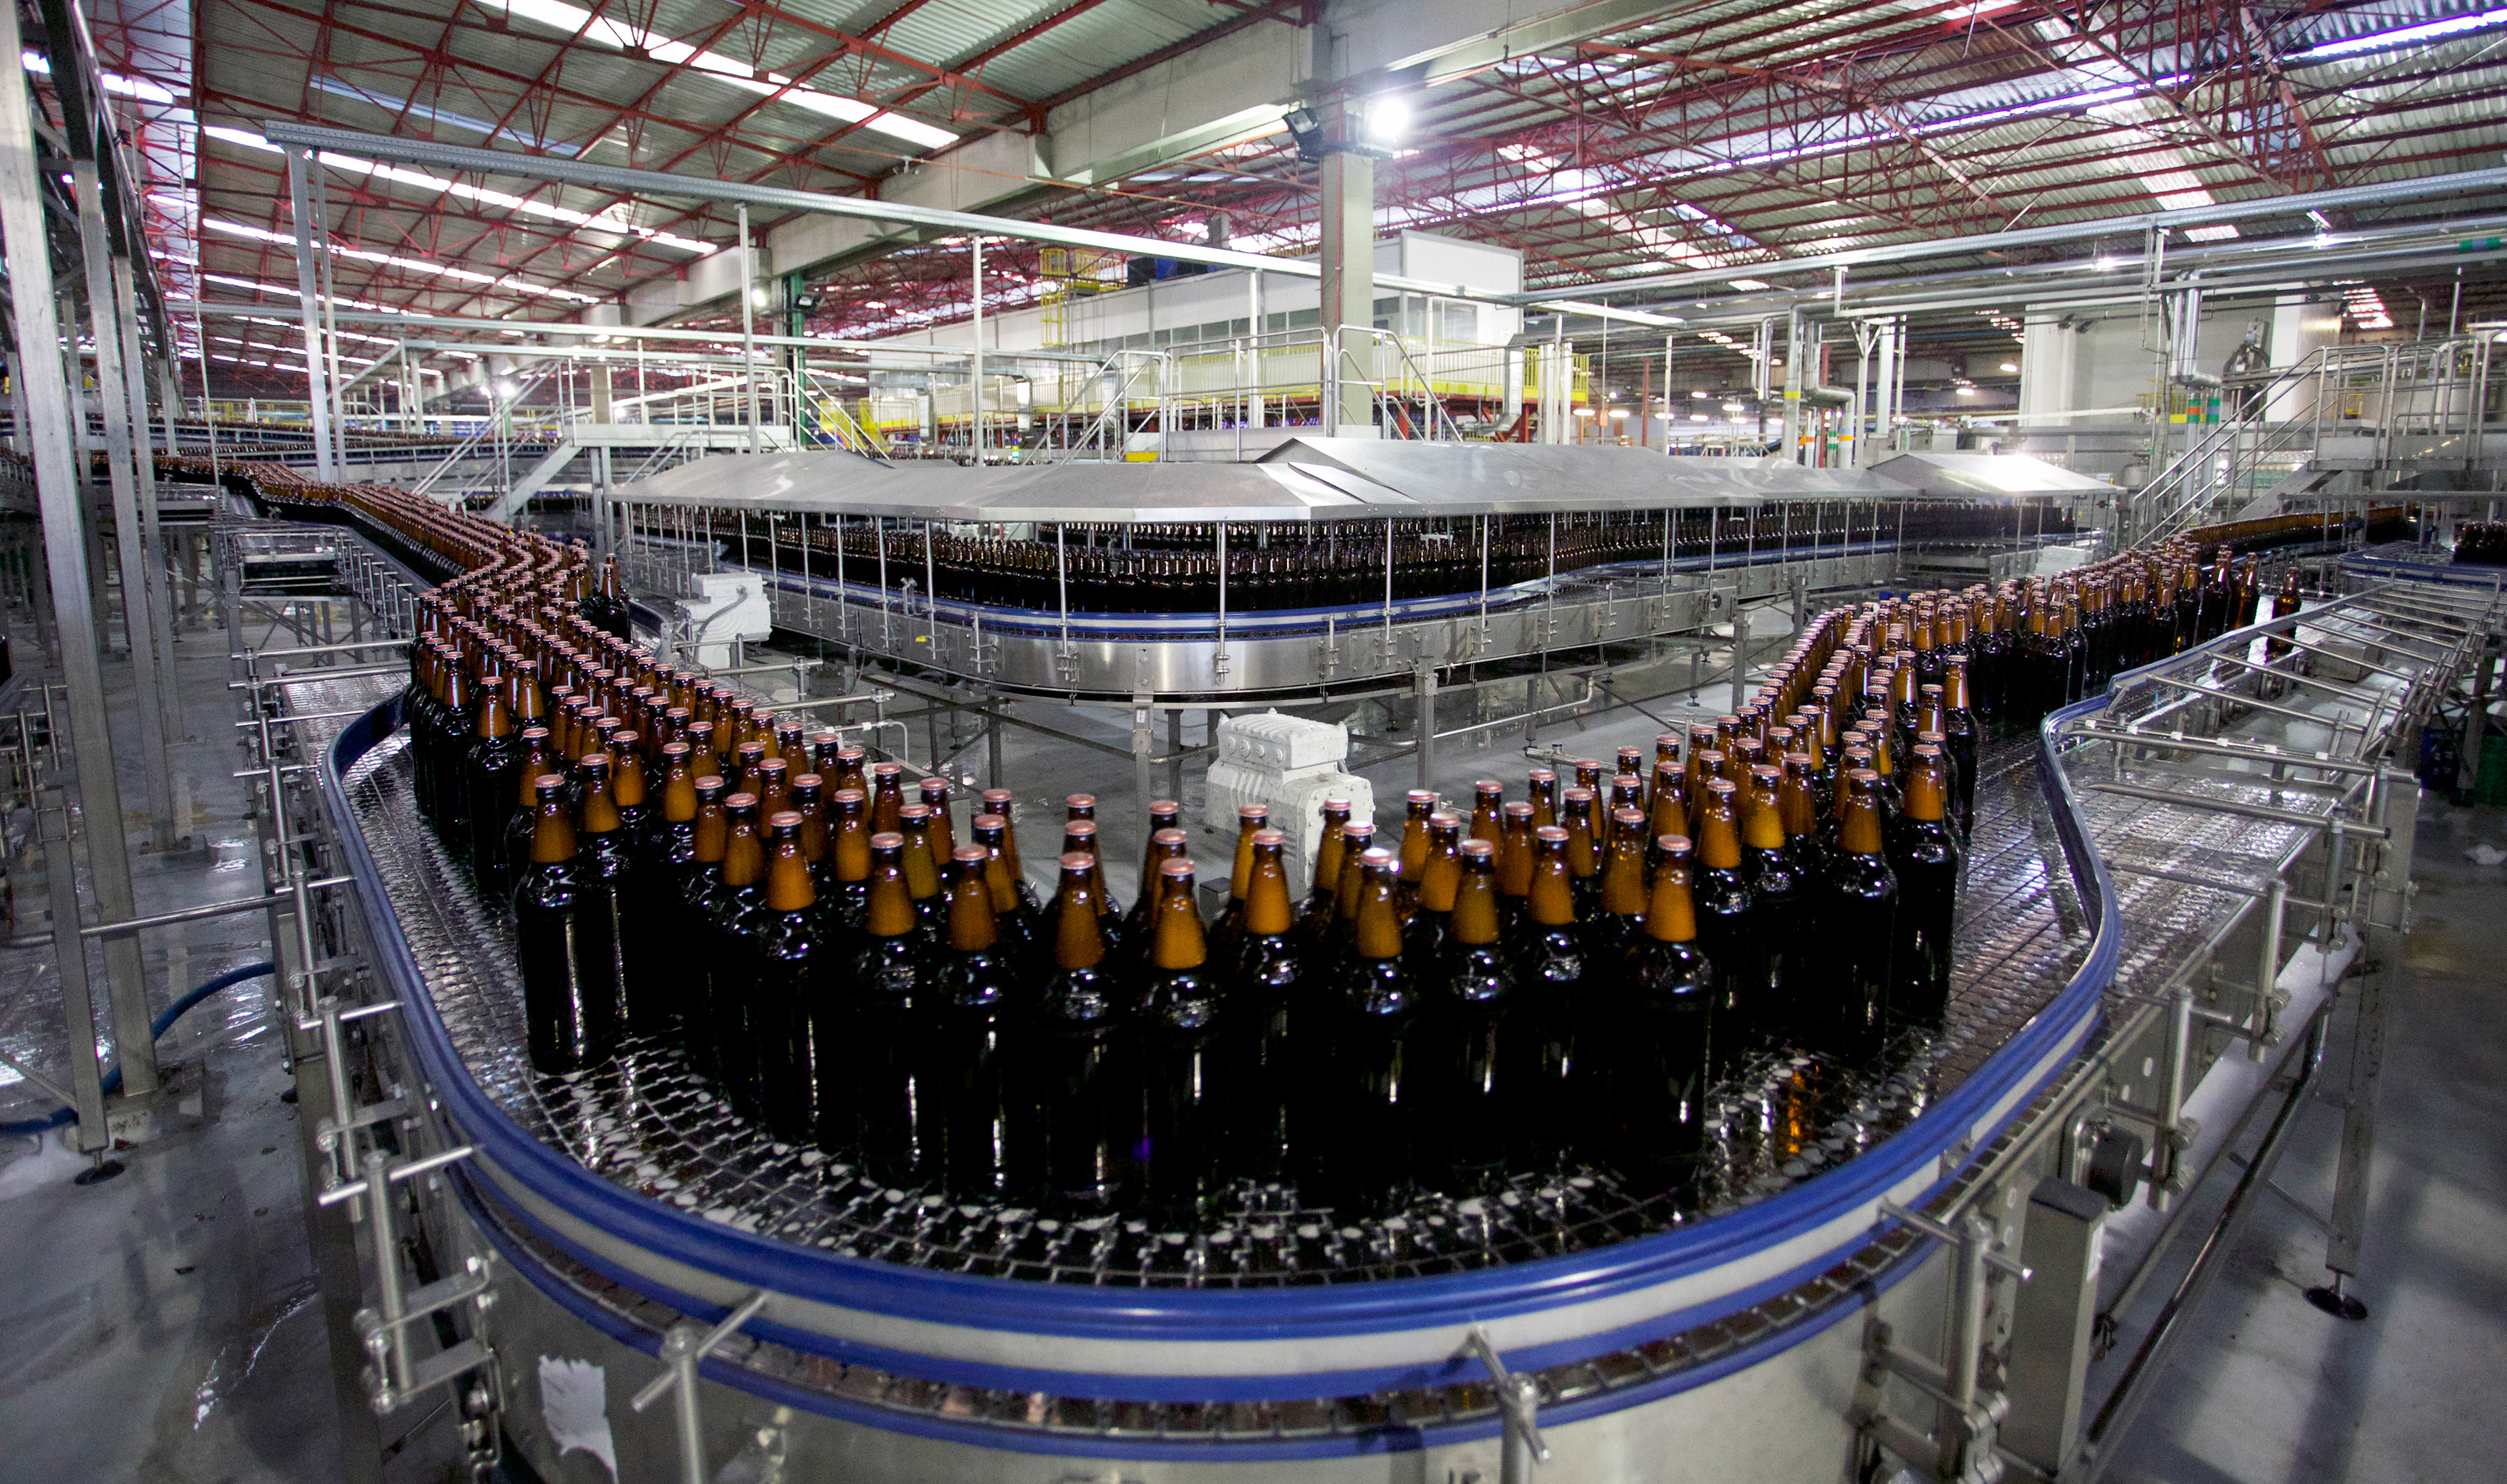 Data: 05/03/2014
Local: Guarulhos, SP
Cliente: Ambev
Ref1: Industrial
Ref2: Fábricas
Job: Guarulhos
Assunto: Linha de produção de cerveja na filial de Guarulhos, SP.
Fotógrafo: Paulo Liebert